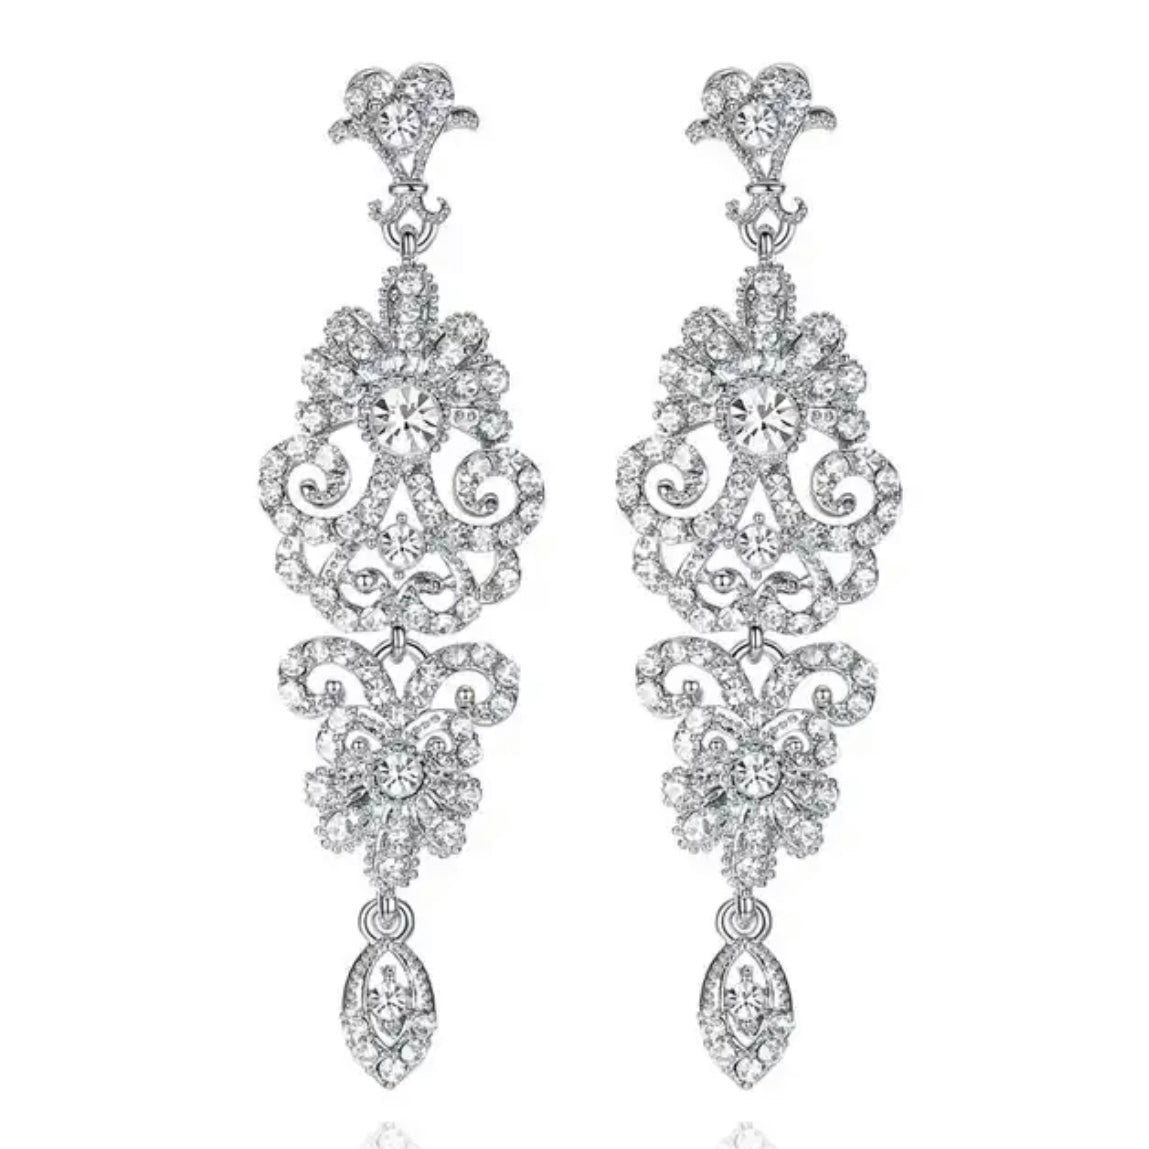 Great Gatsby 1920's Crystal Rhinestone Drop Earrings - Silver (Style 9)